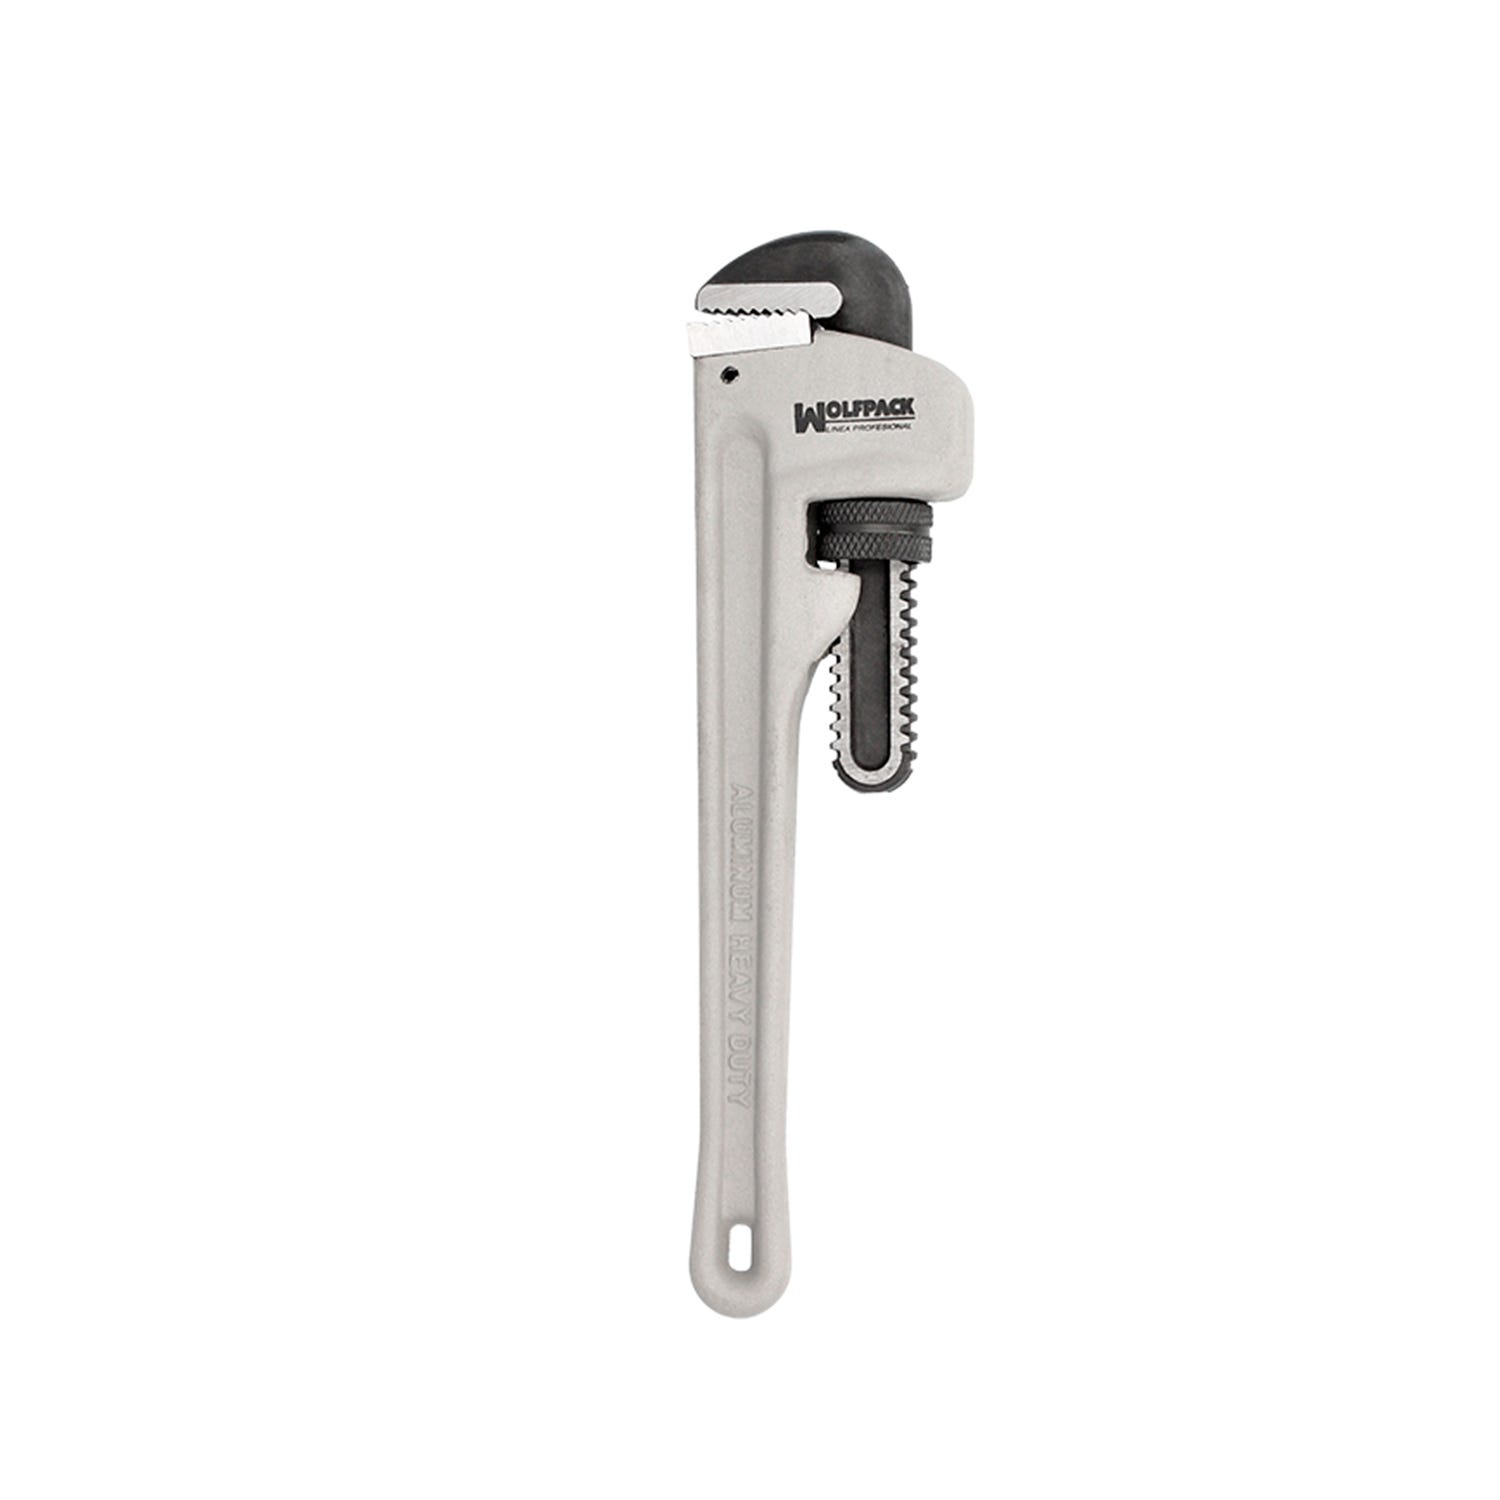 Grifa o llave para tubos indicado para fontanería y riego.